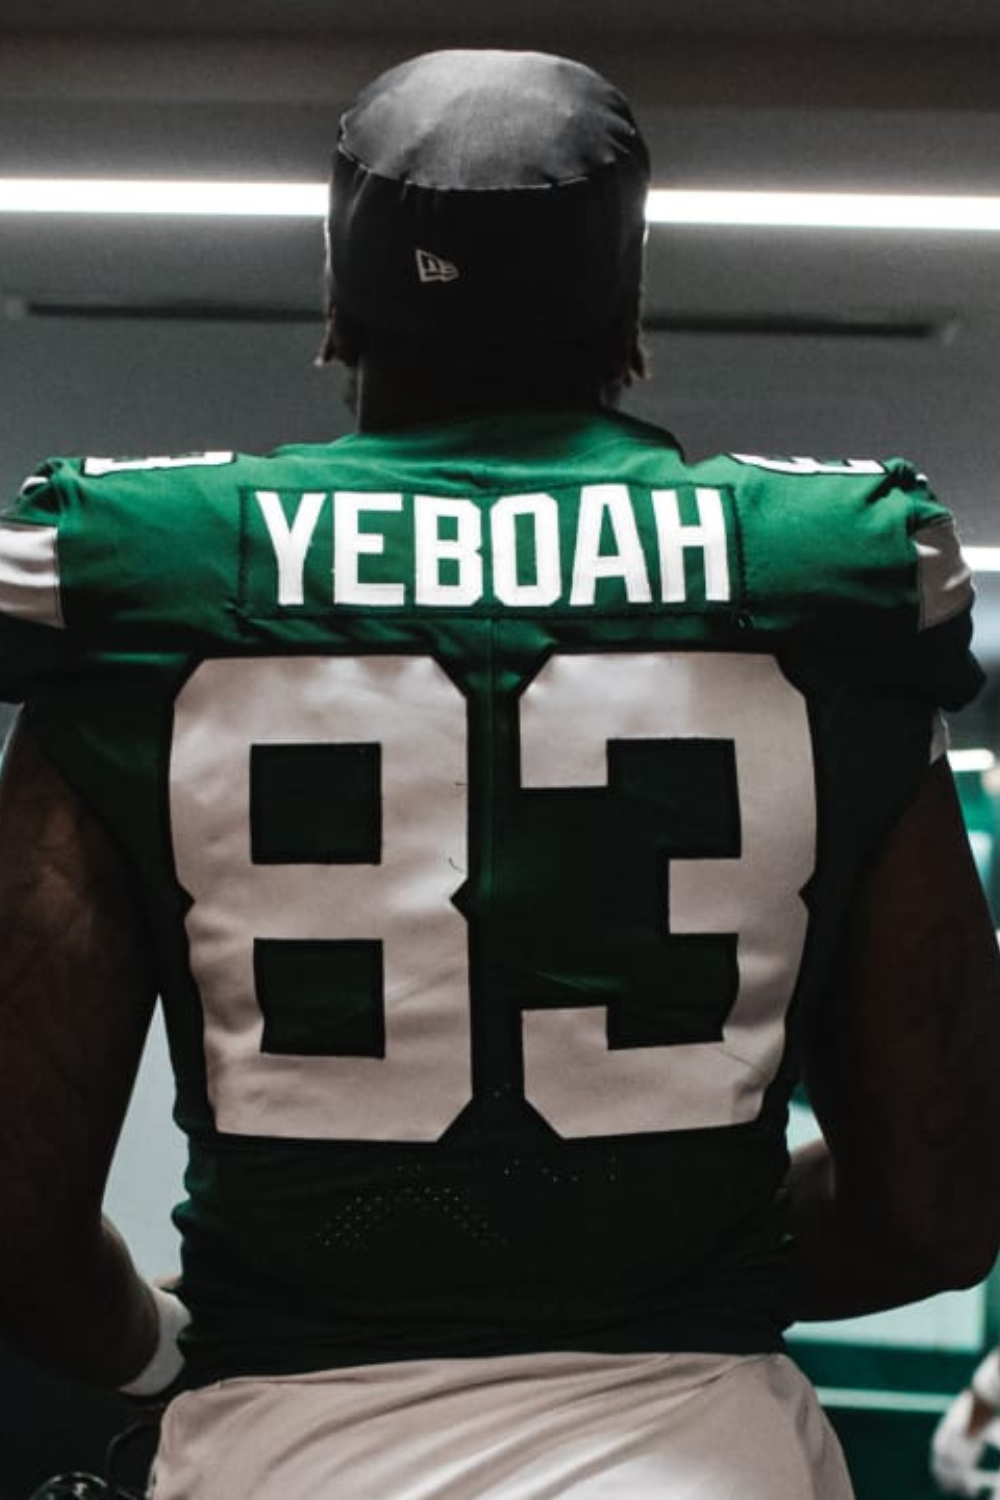 The New York Jets No. 88 Yeboah